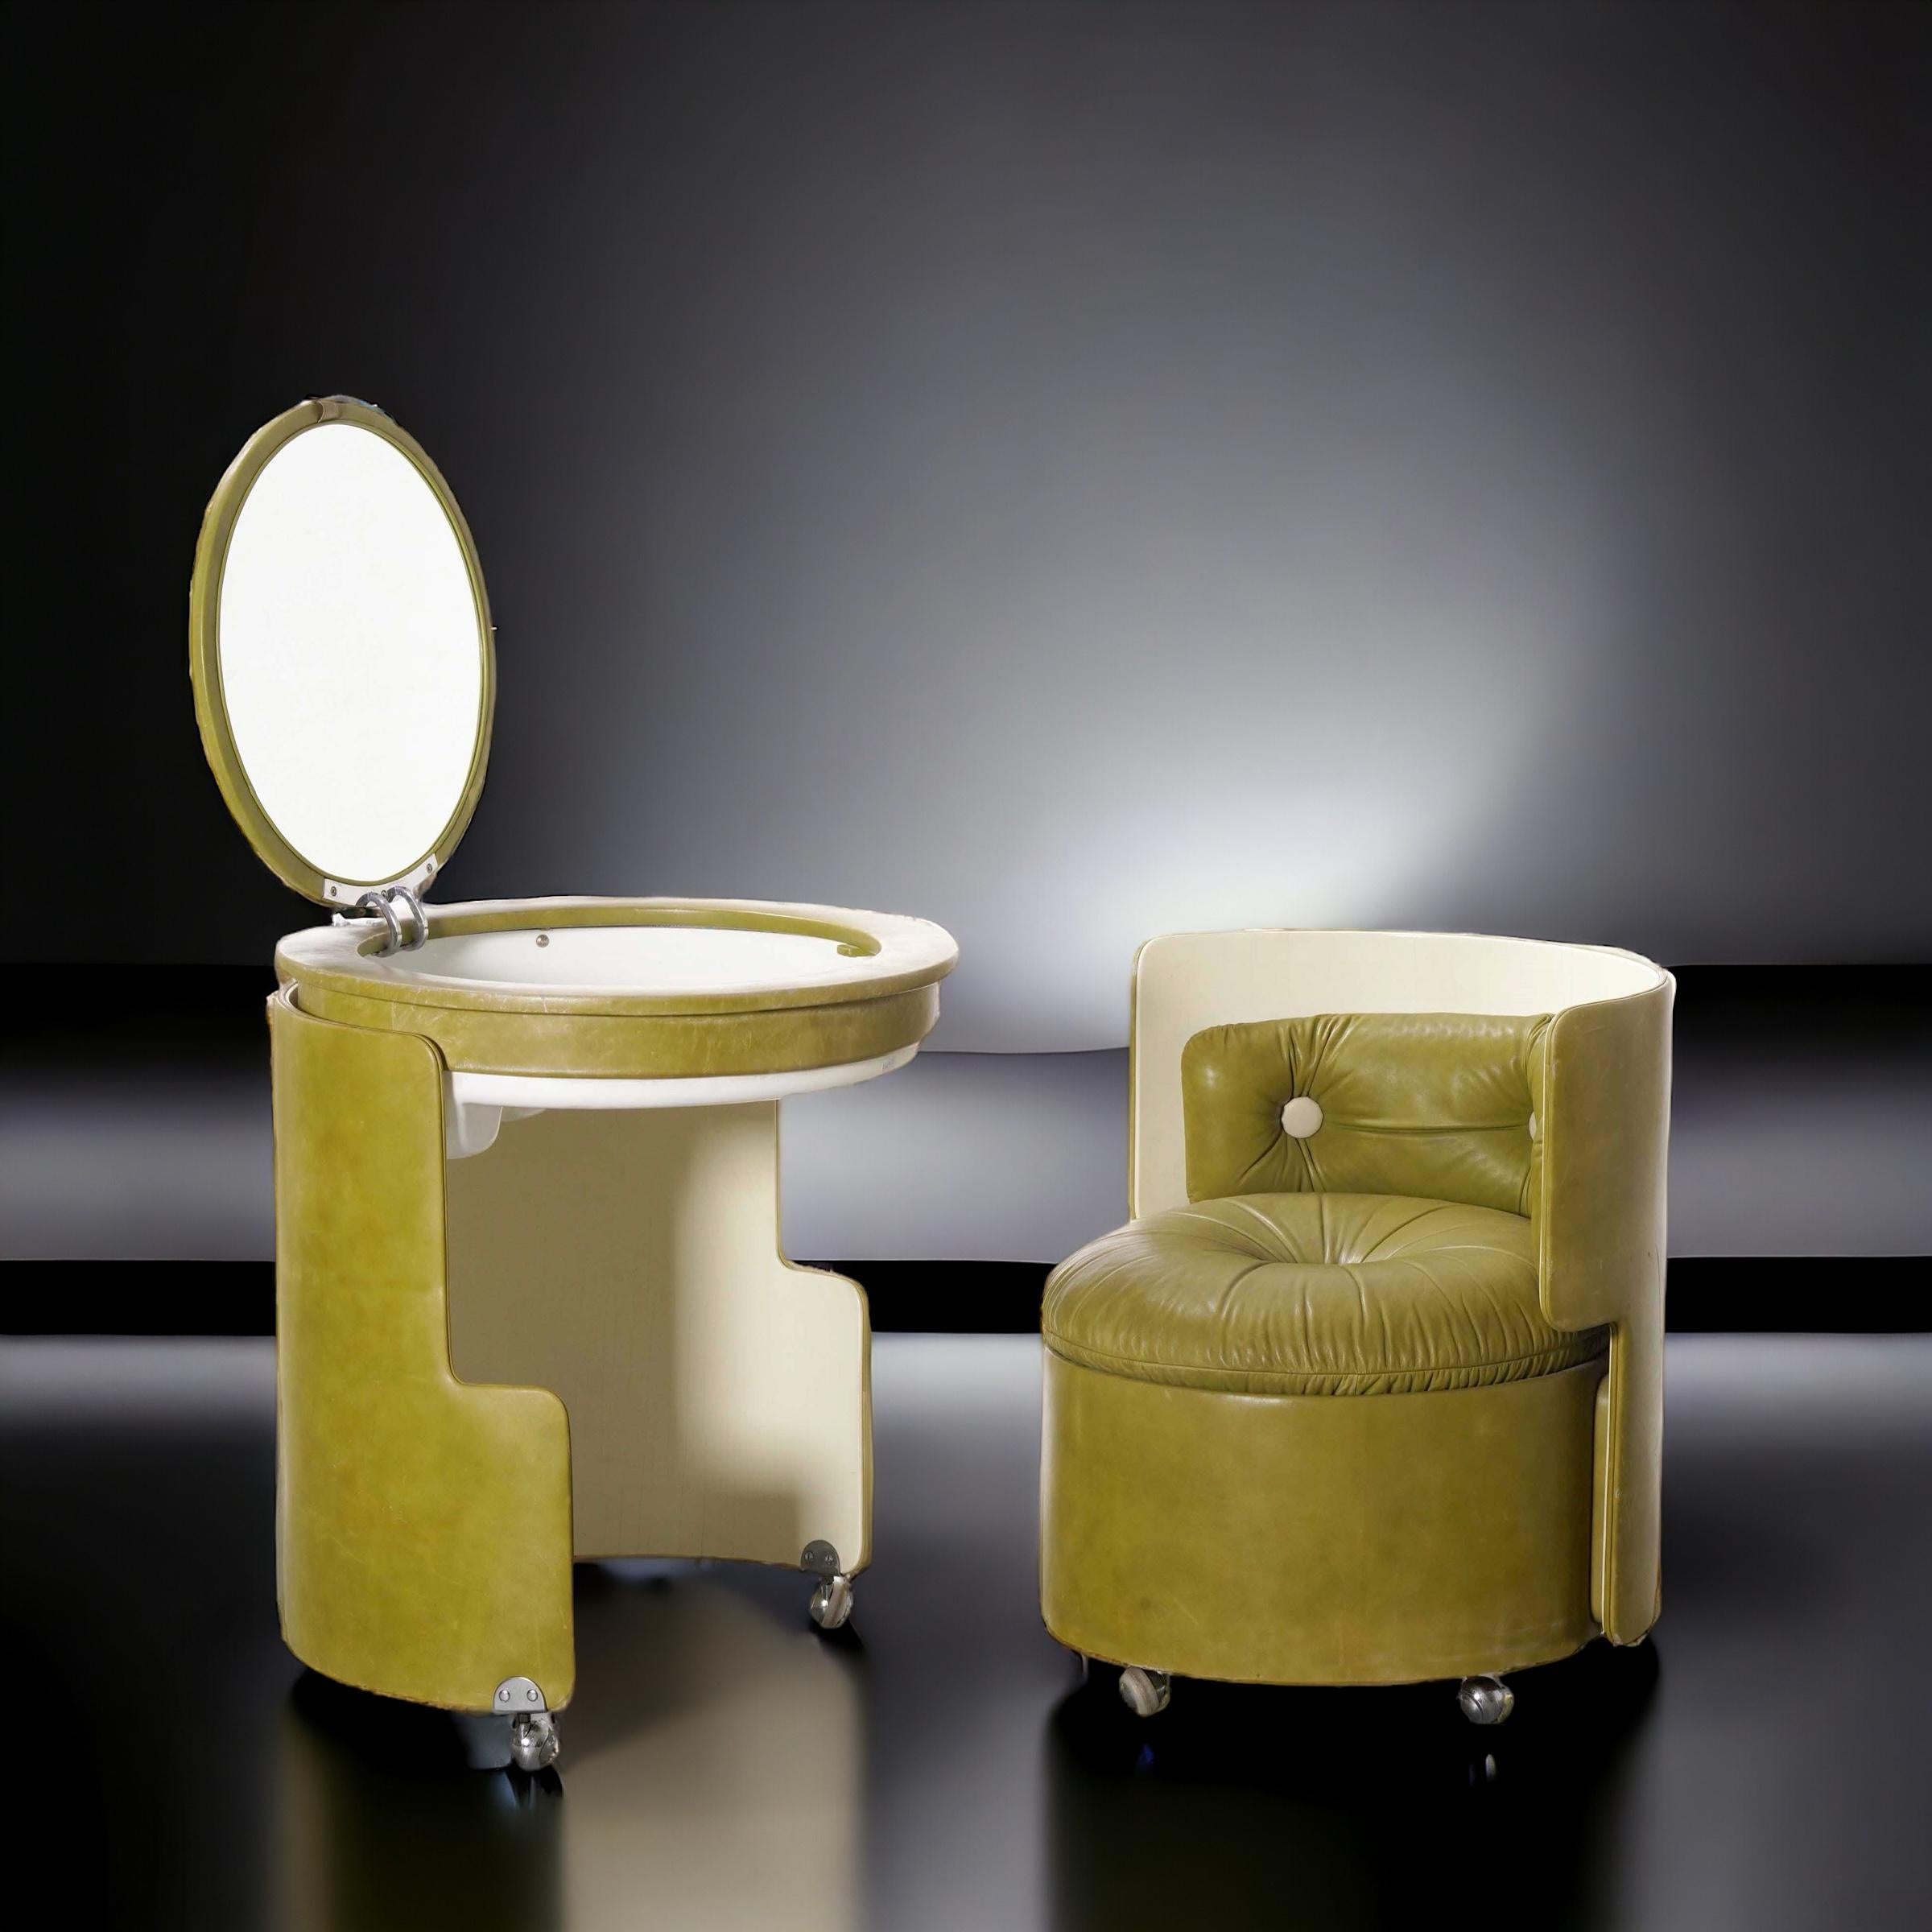  
Vanity Mod. Dilly Daily di Luigi Massoni per Poltrona Frau, 1968 ca. La coiffeuse est composée de deux pièces, un fauteuil rond (qui mesure à lui seul 70 x 65 x 60 cm) et la table elle-même avec un espace pour les accessoires et un miroir rond.